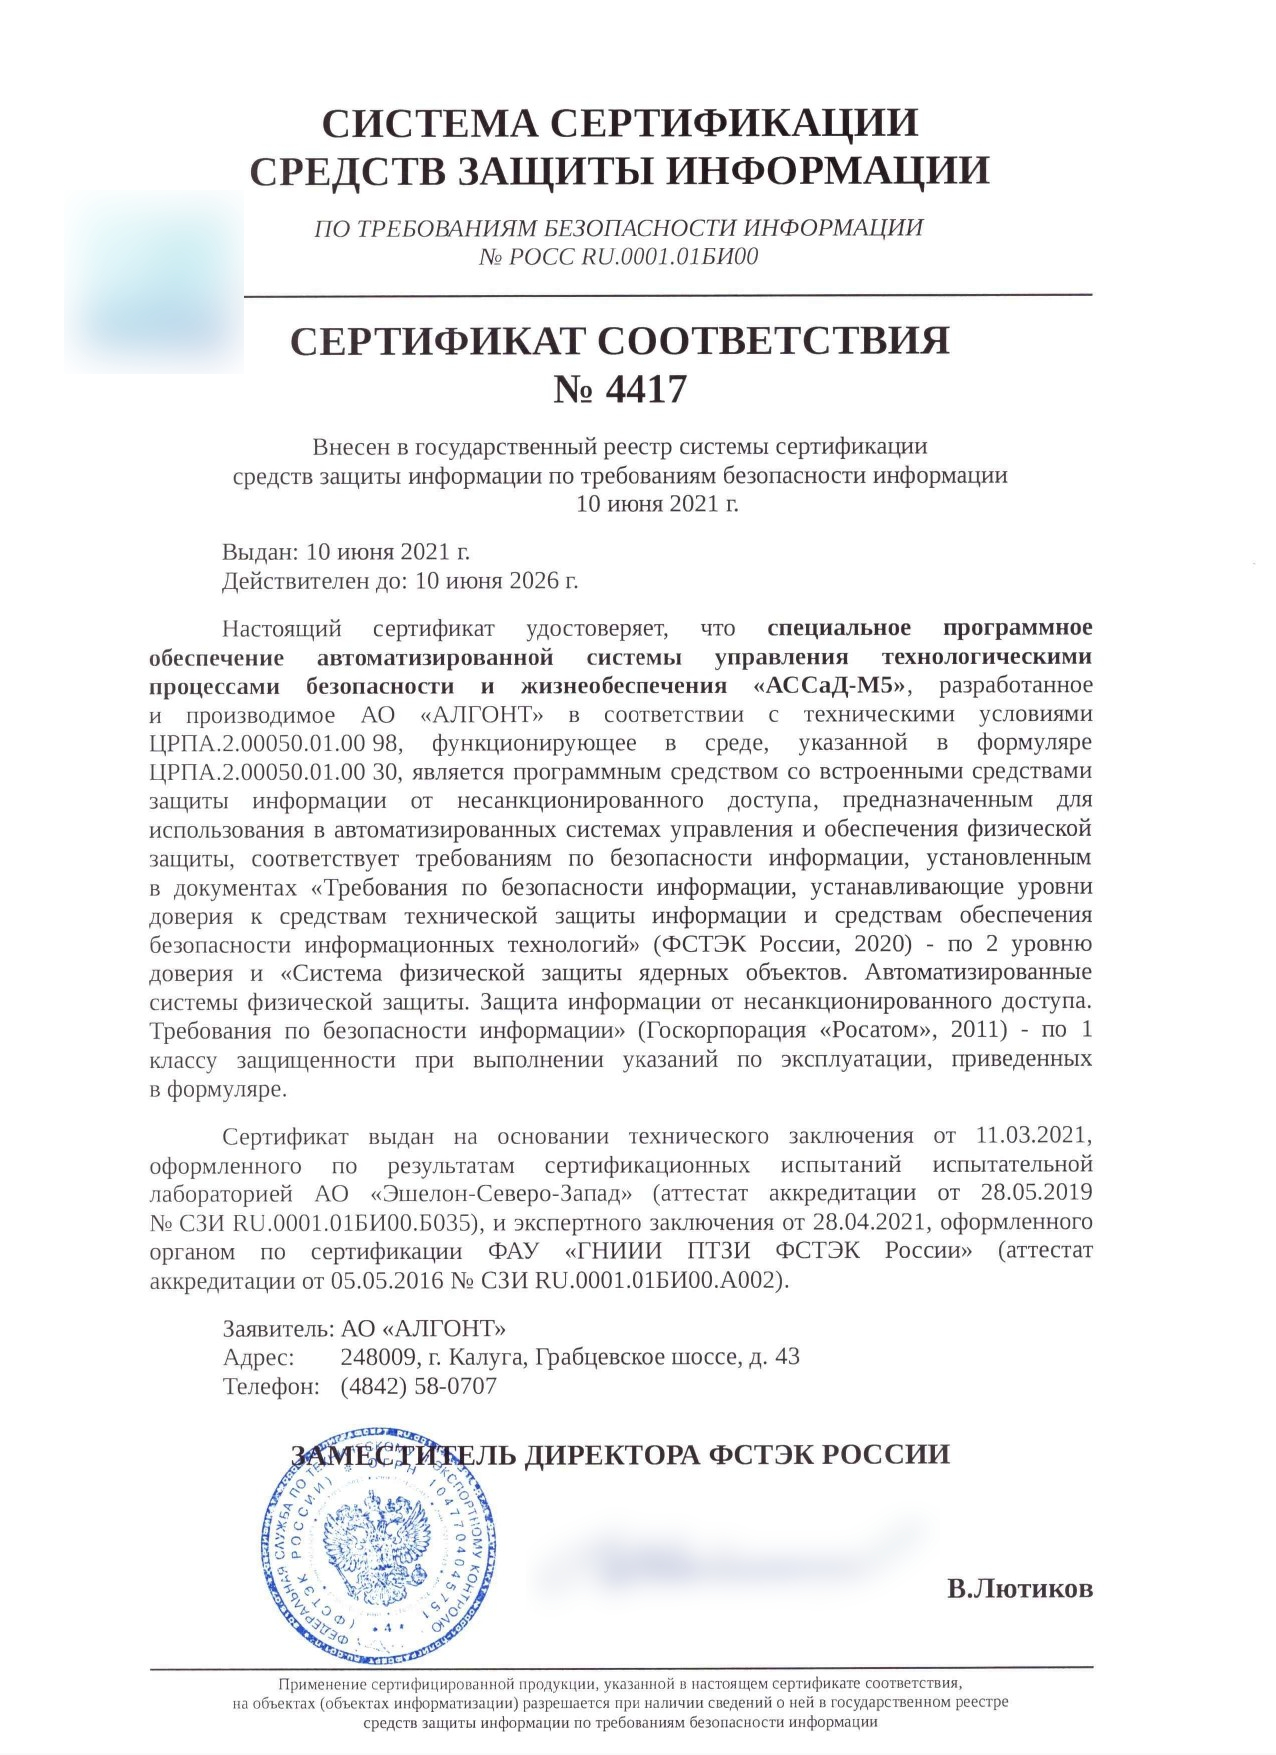 Сертификат соответствия ФСТЭК России на СПО АССаД-М5 № 4417 от 10.06.2021